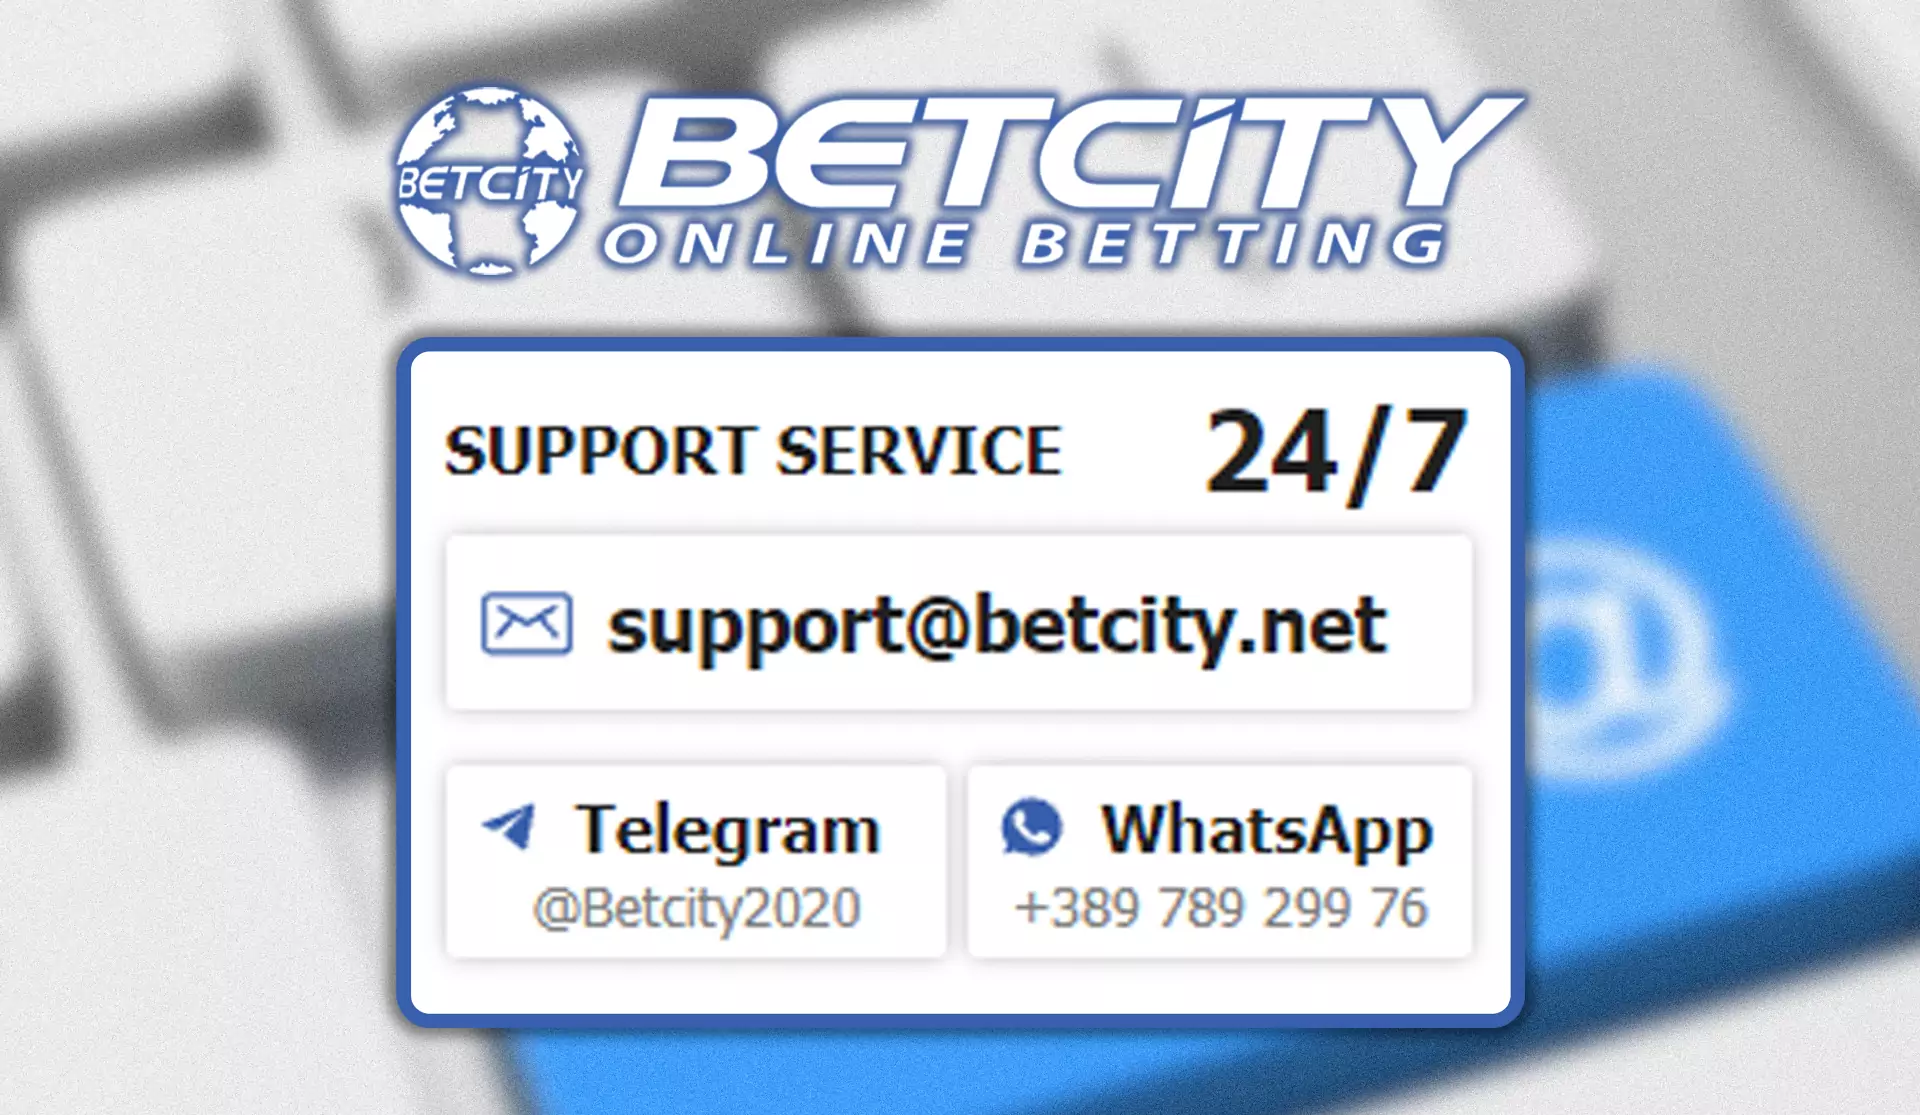 Betcity की सहायता सेवा 24/7 काम करती है, इसलिए कभी भी चैट खोलने के लिए स्वतंत्र महसूस करें।